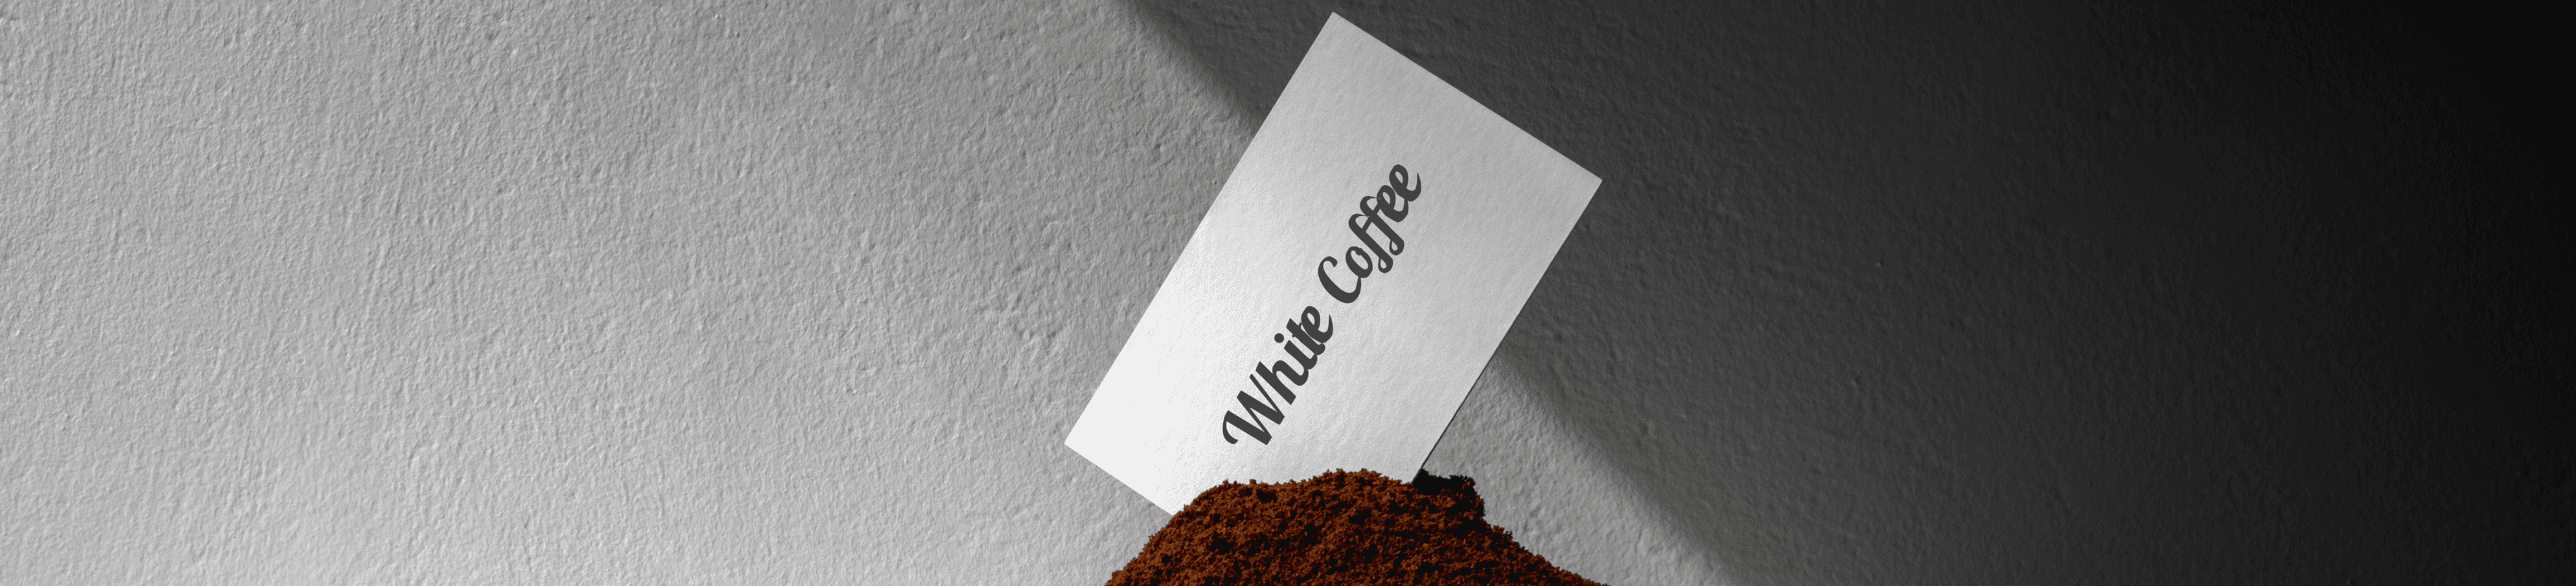 White coffee card